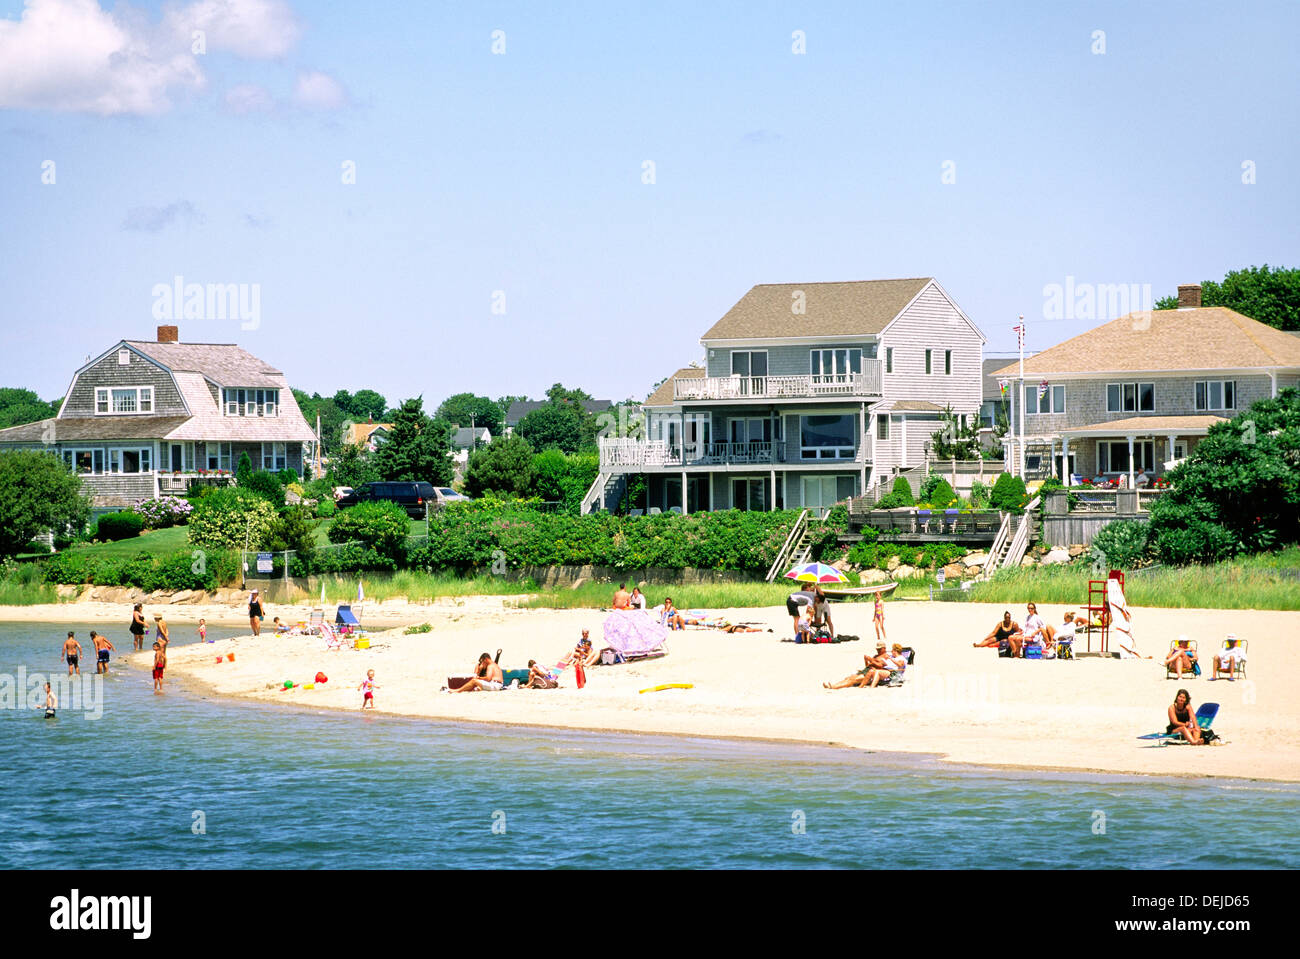 Hyannis Harbor, Cape Cod, New England, Massachusetts, USA. Typische Private Häuser, Wohnungen, Eigentumswohnungen und Menschen am Strand Stockfoto